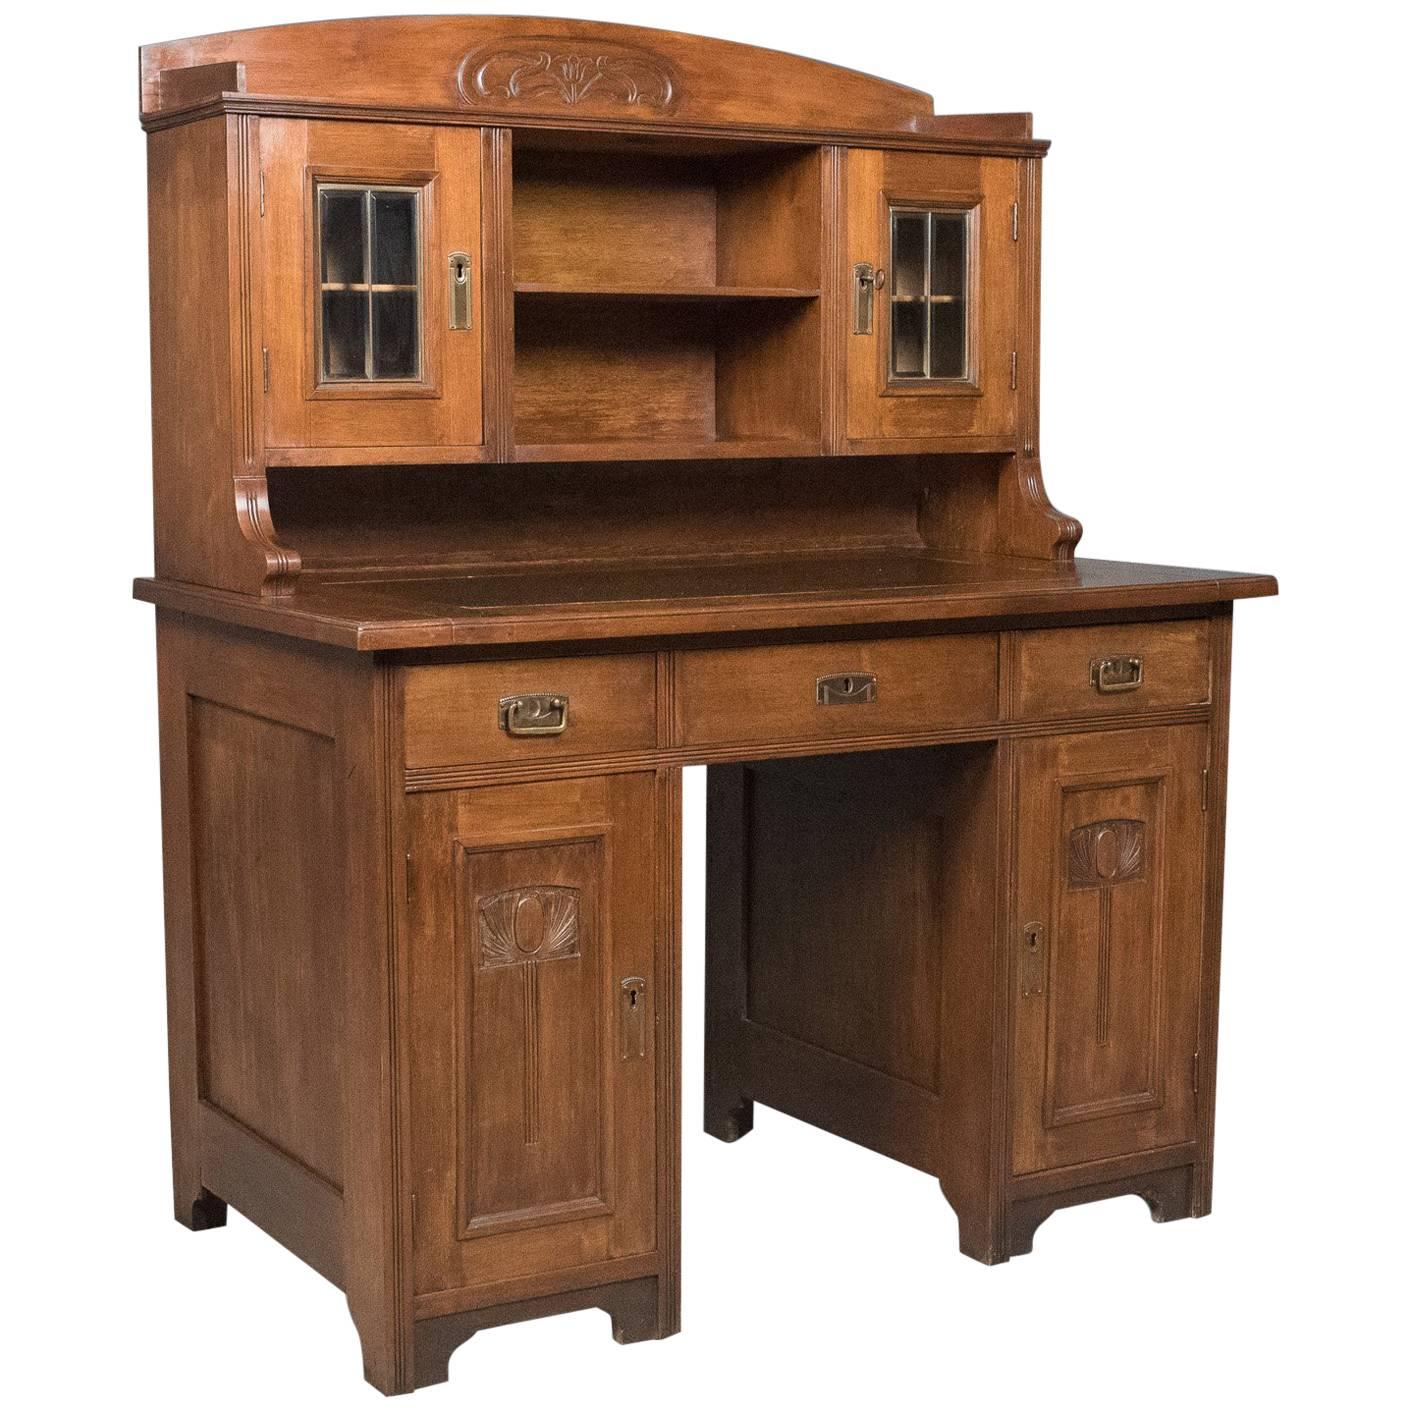 Antique Art Nouveau Desk, English, Victorian, Walnut Cabinet Liberty-Esque